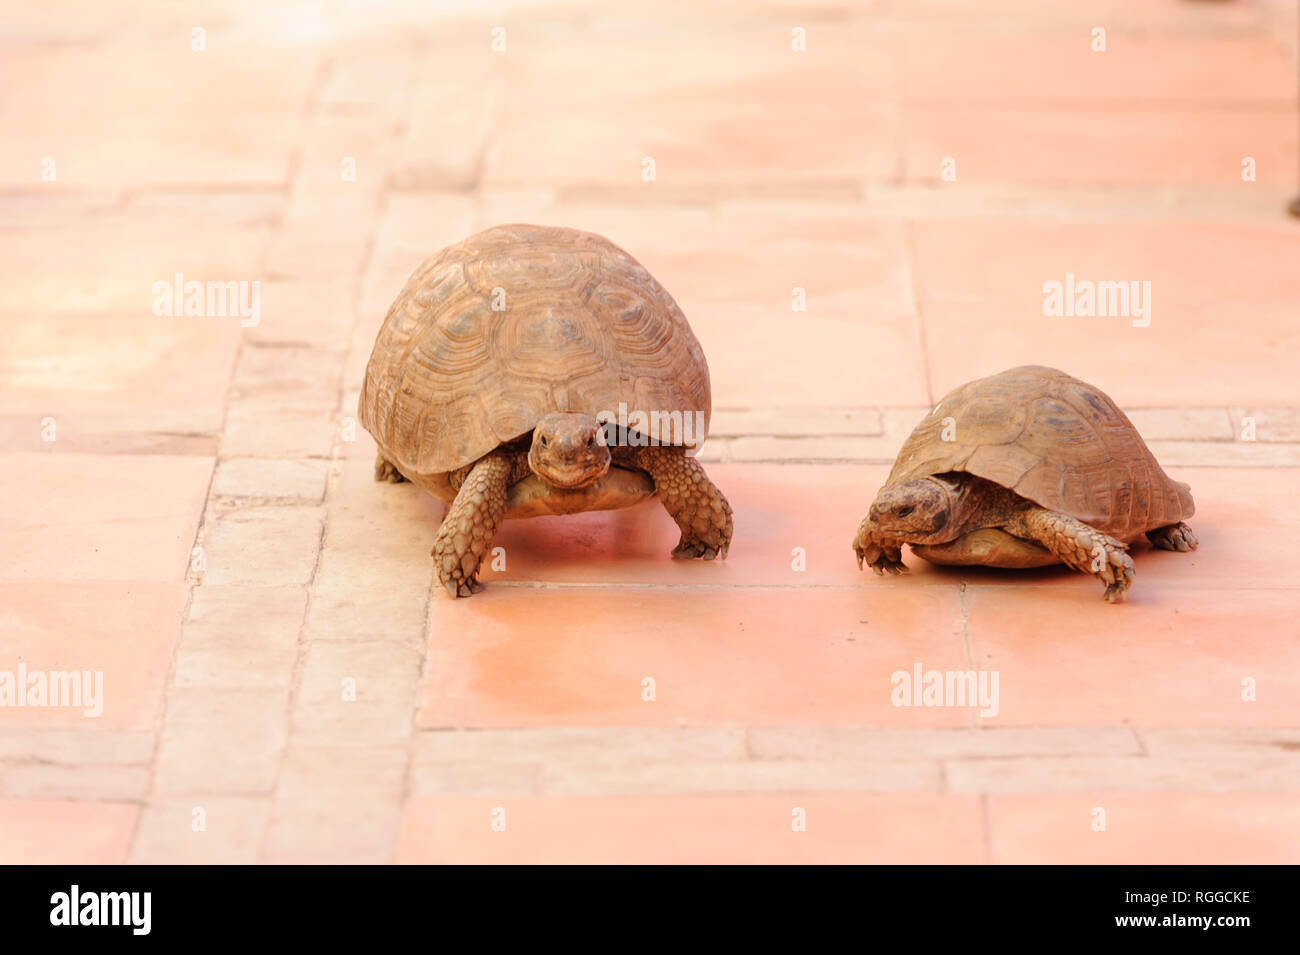 05-03-15, Marrakech, Morocco. The Riad Porte Royale. Two tortoises on the terrace. Photo: © Simon Grosset Stock Photo